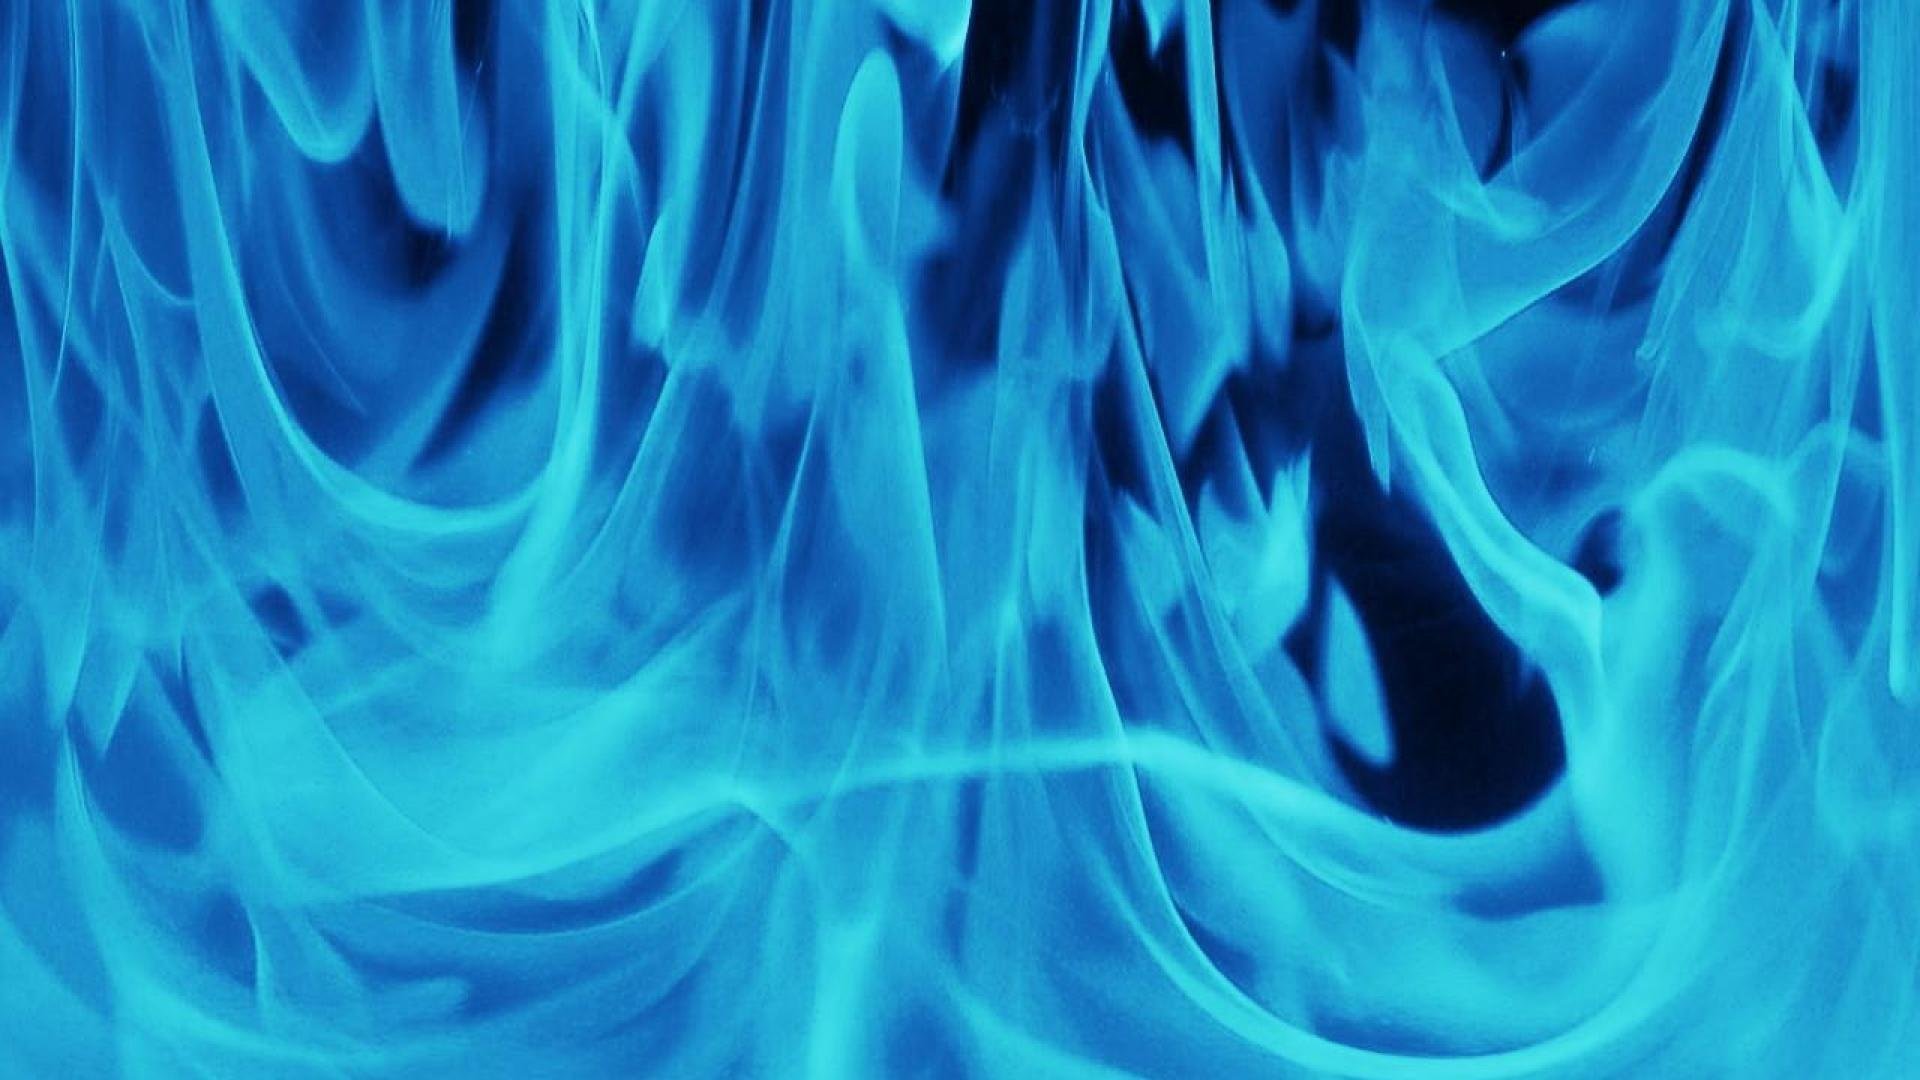 картинки синие пламя